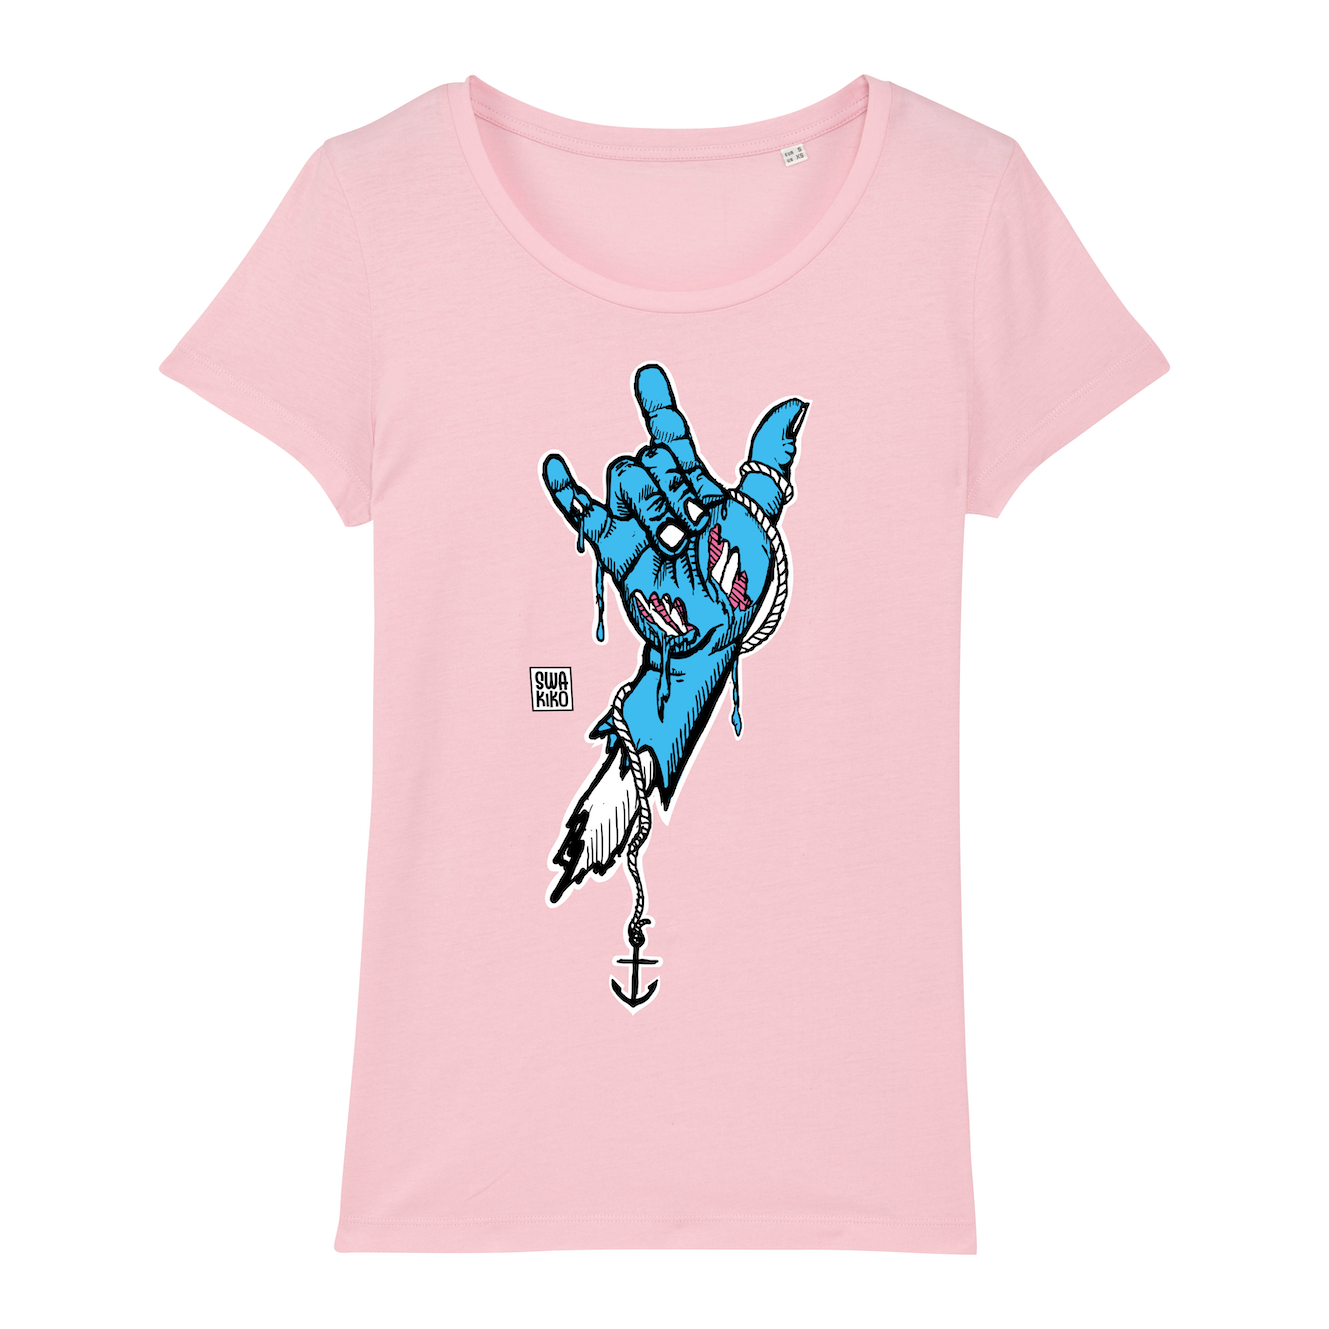 Surf t-shirt women pink, rock hand blue